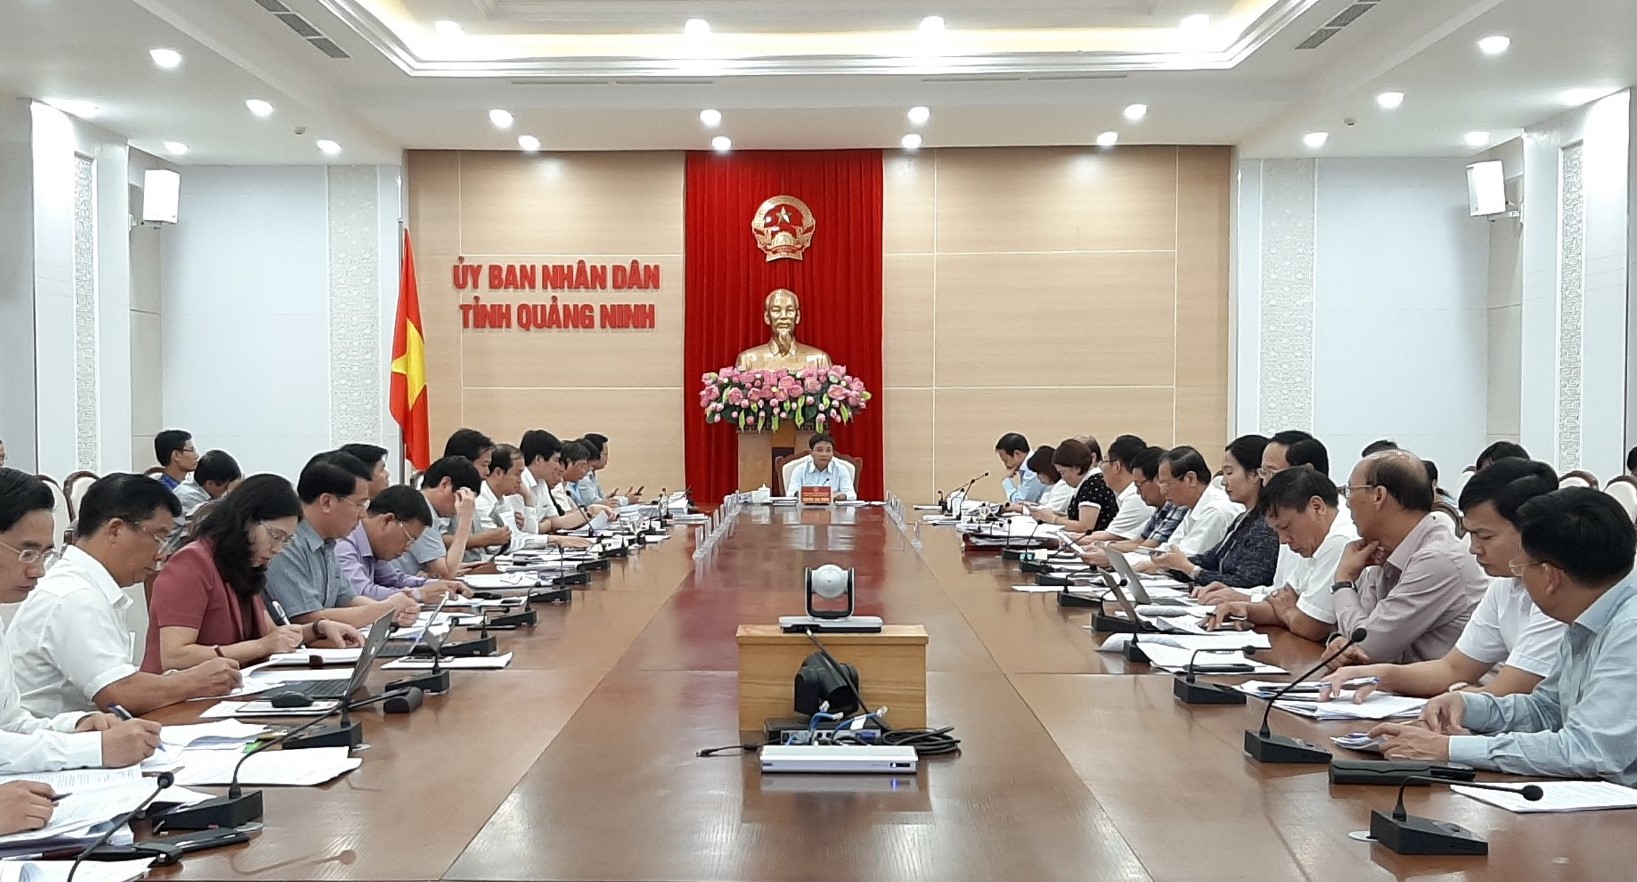 Một cuộc họp của Ban Cán sự Đảng và Thường trực UBND tỉnh Quảng Ninh